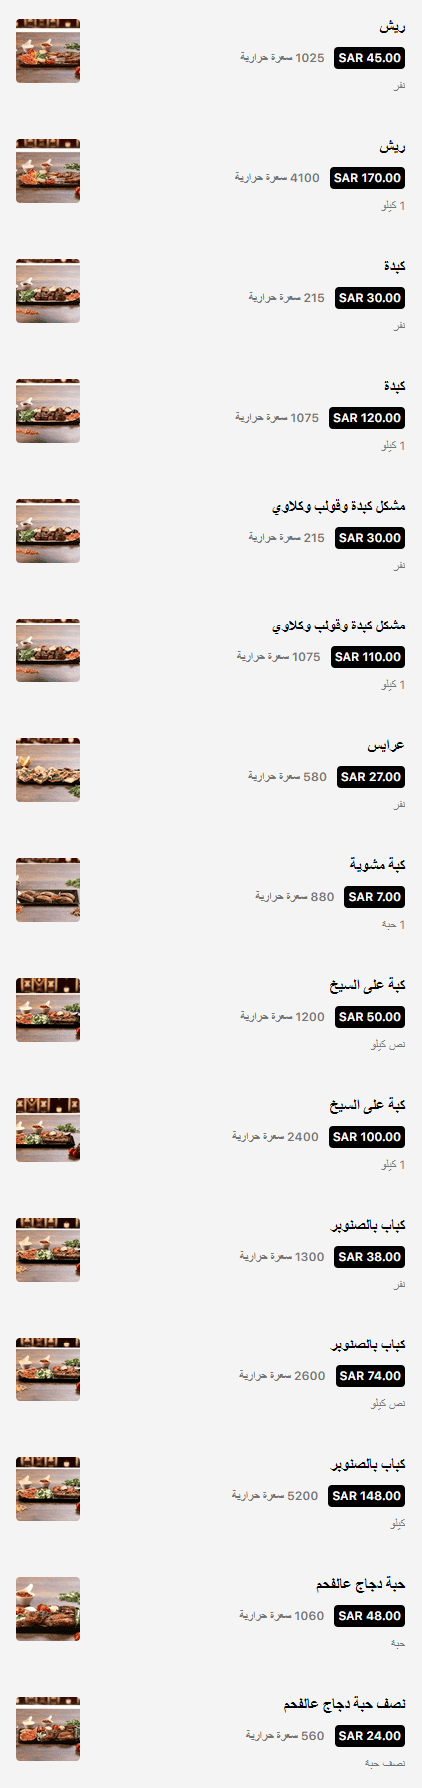 4 4 مطعم الجلاب الرياض | منيو + فروع + اسعار